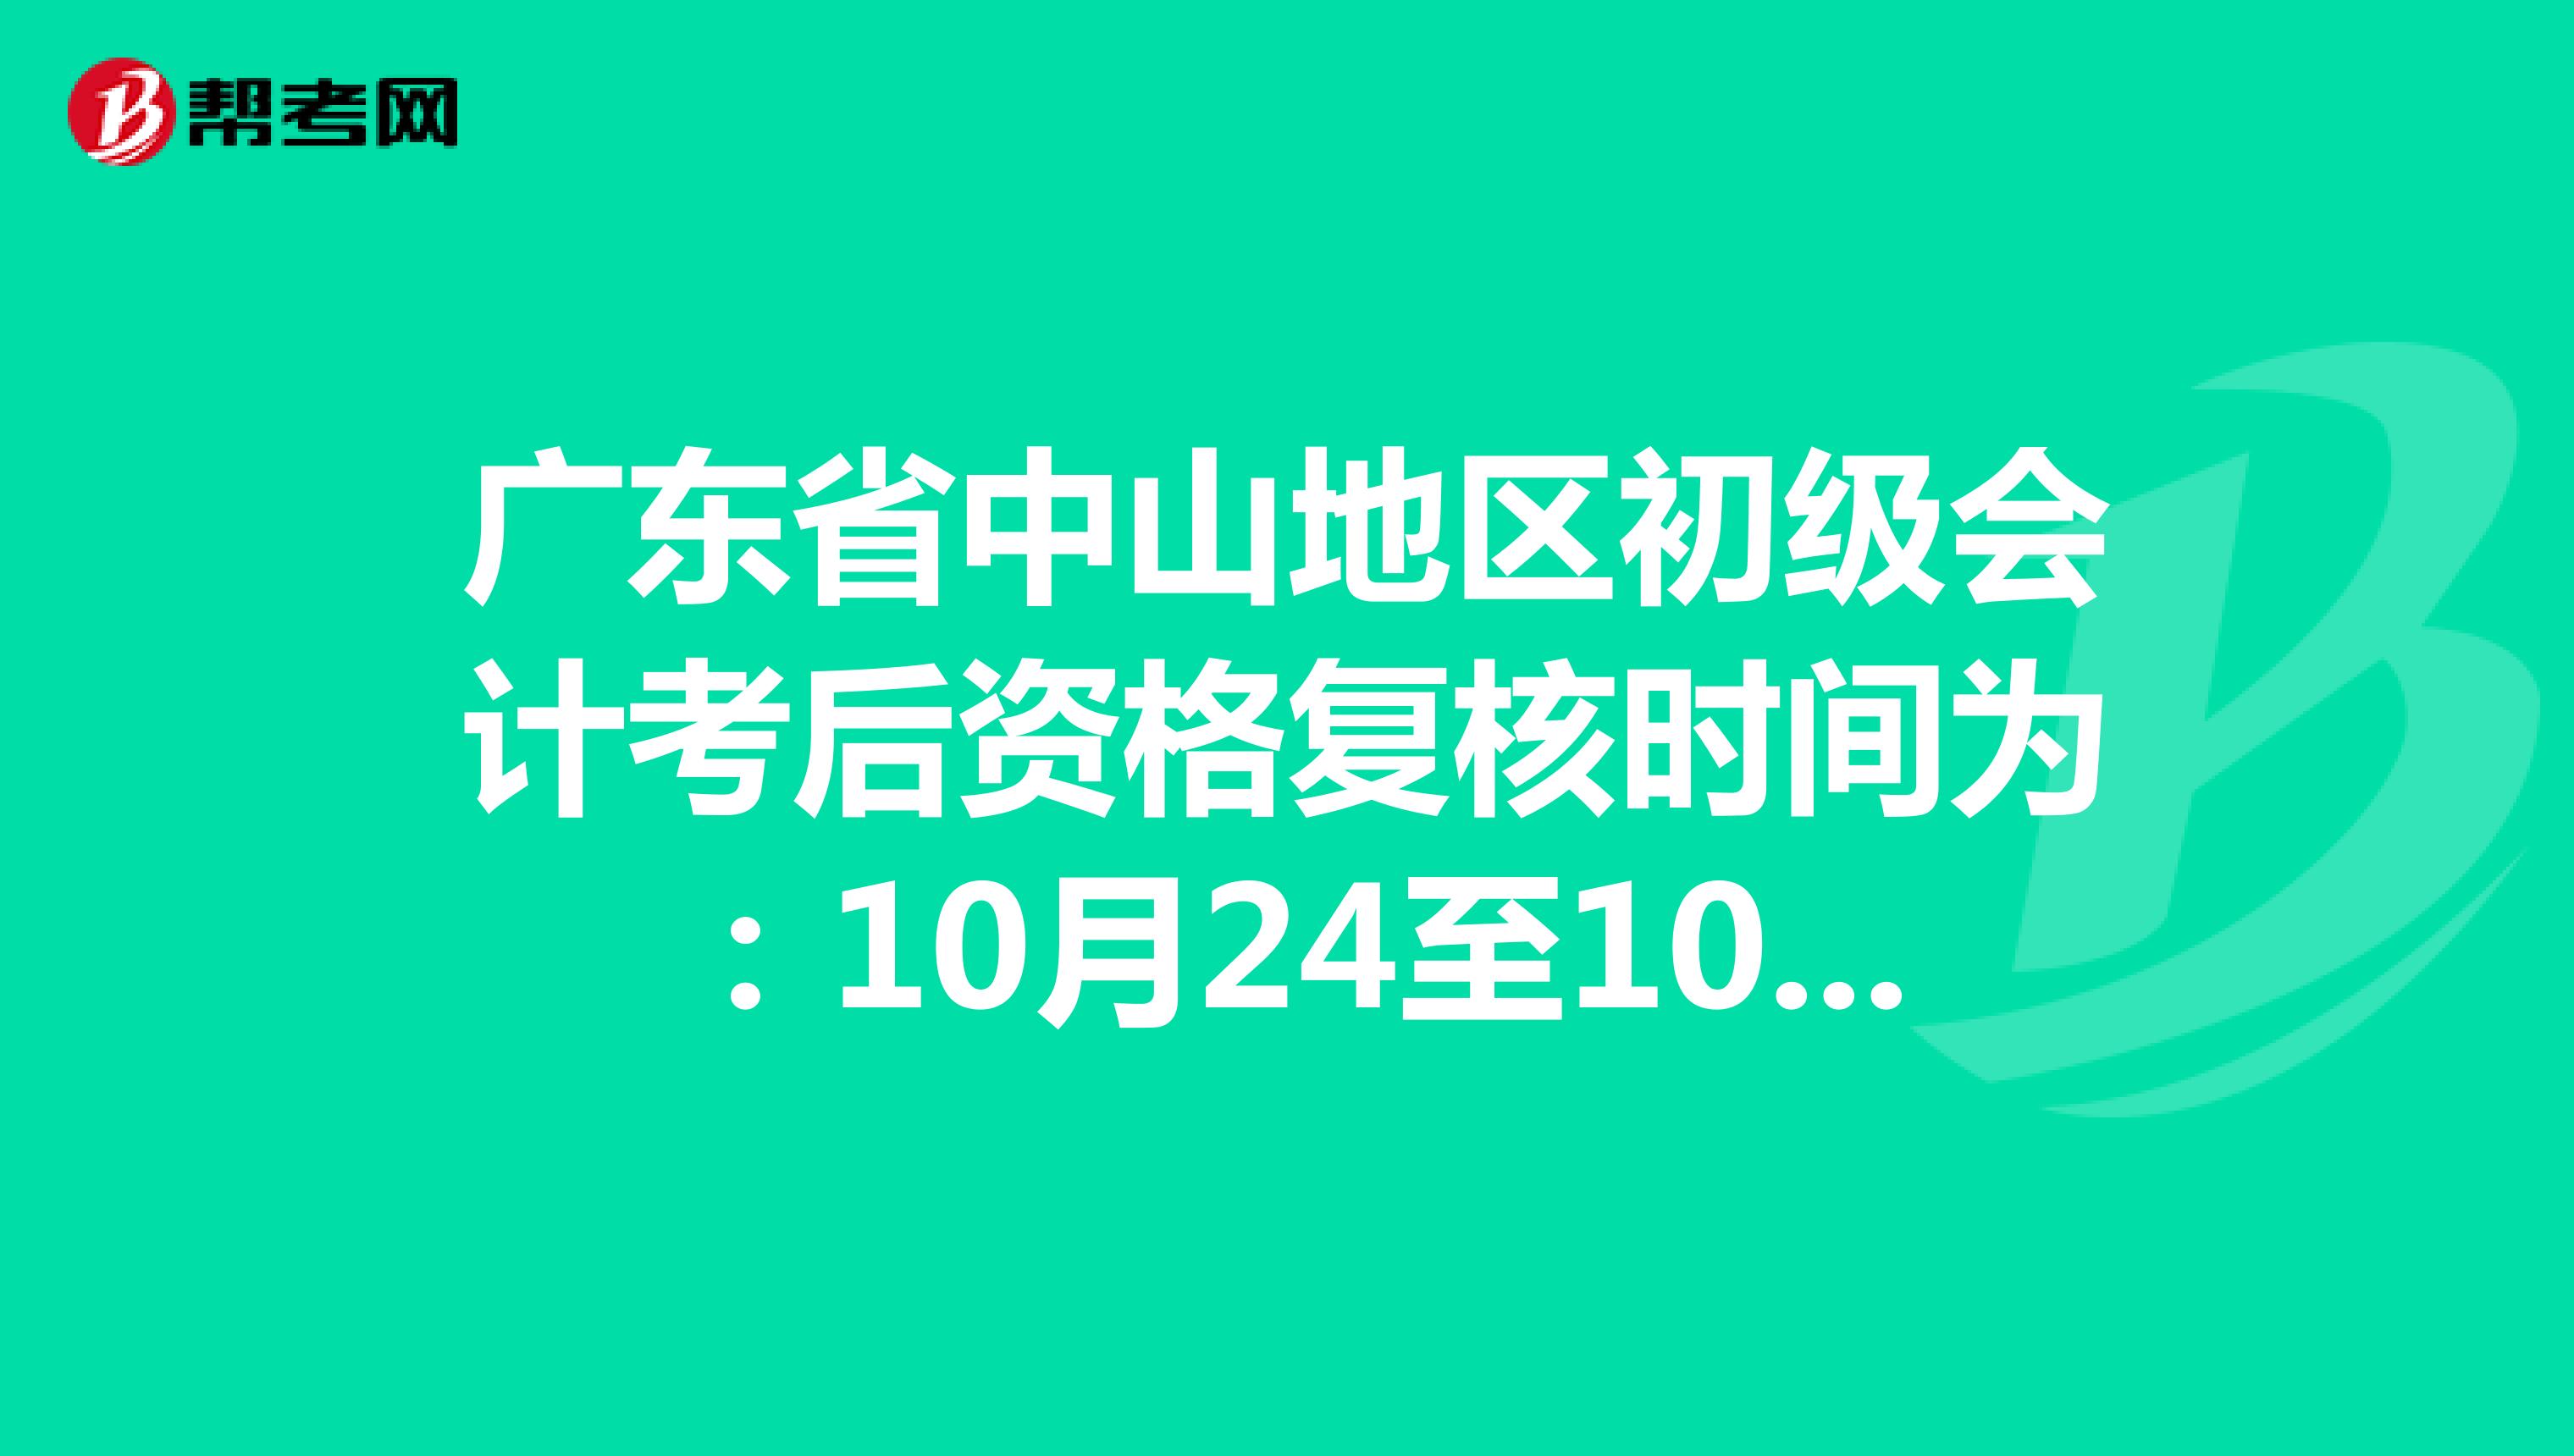 广东省中山地区初级会计考后资格复核时间为：10月24至10月30日